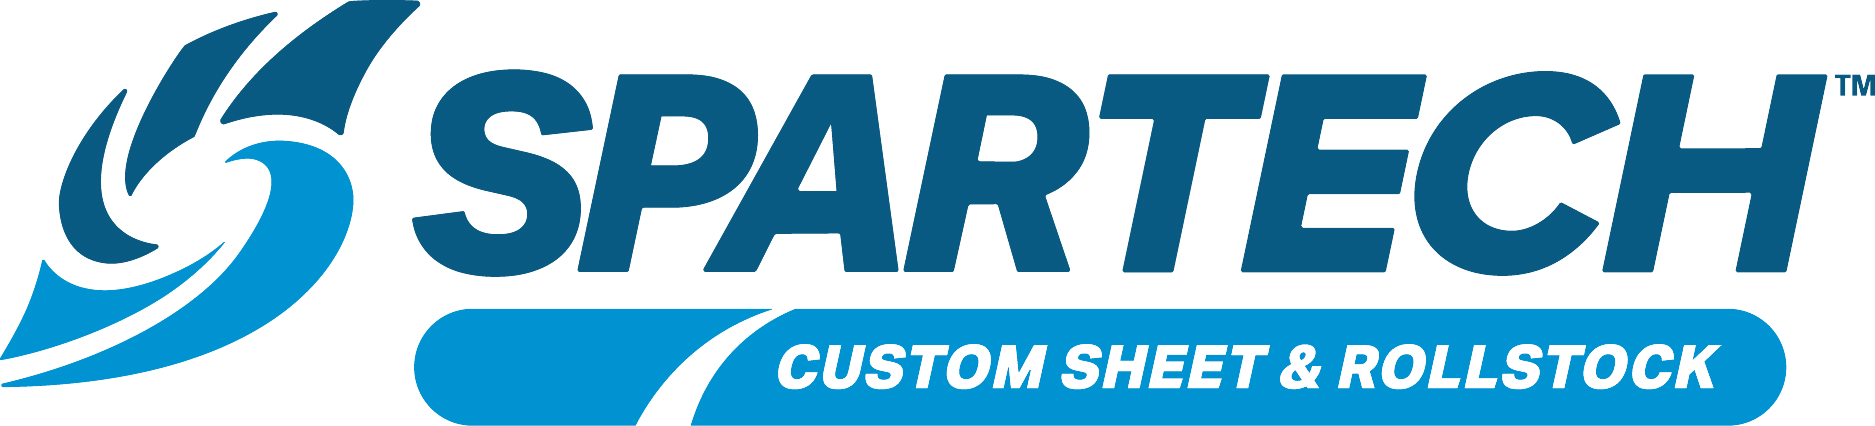 Spartech Company Logo Partner of ASP Plastics